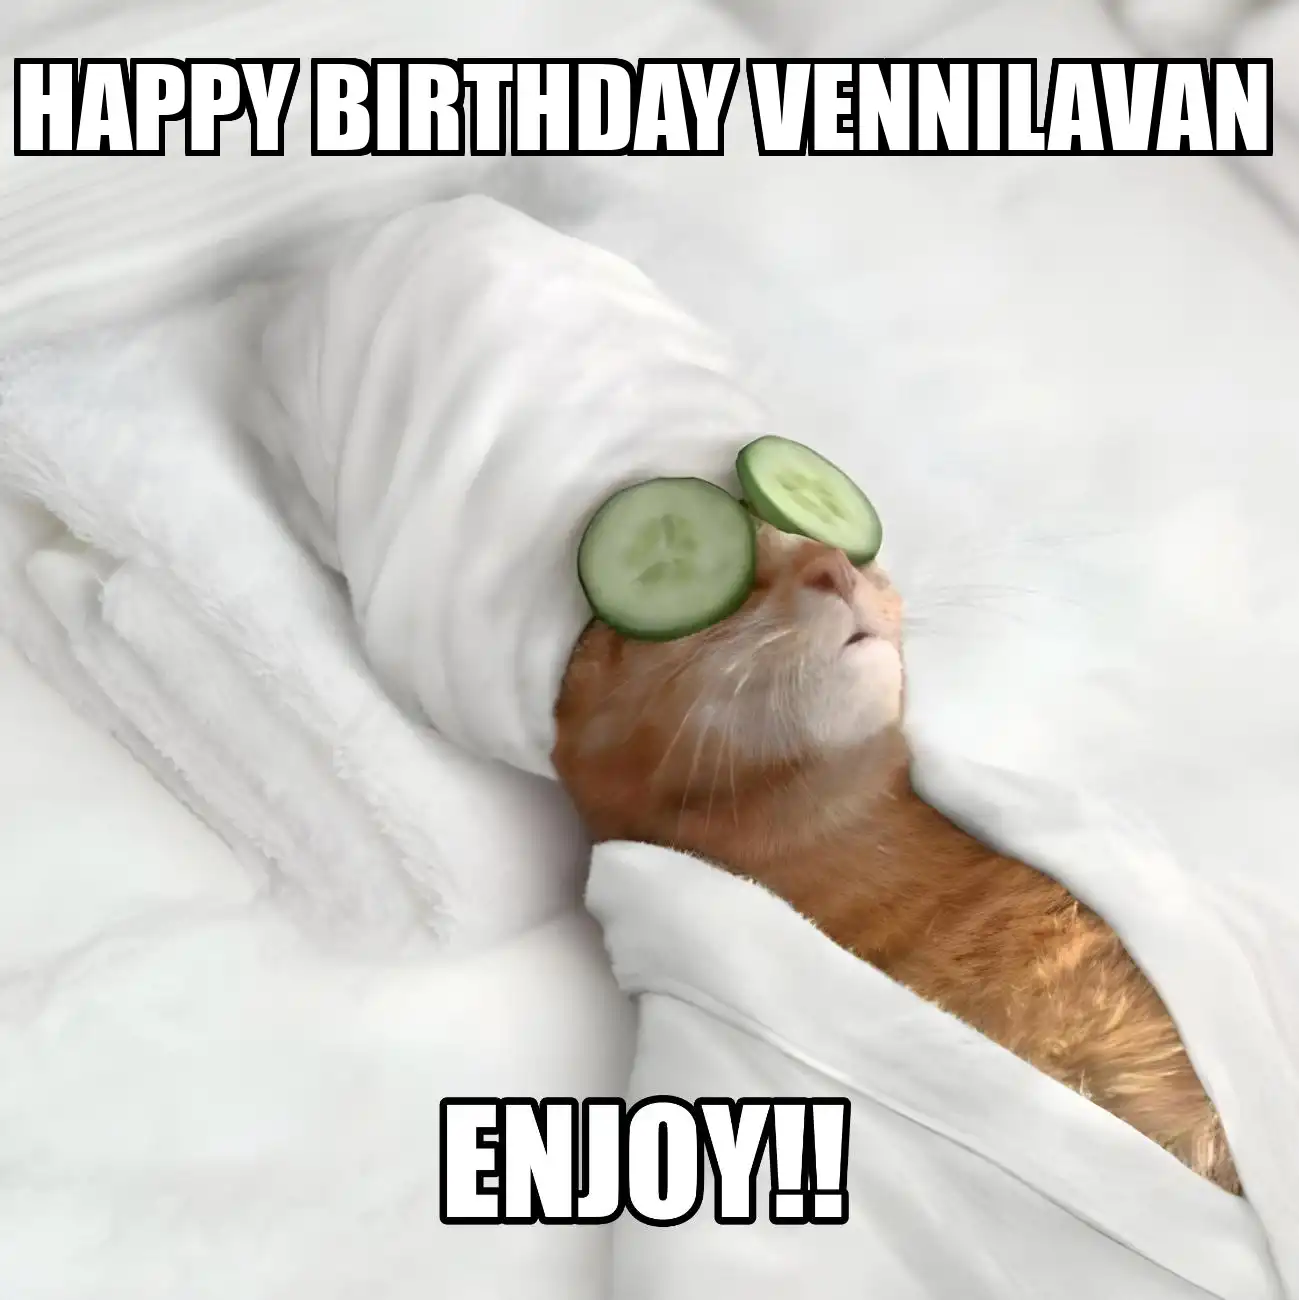 Happy Birthday Vennilavan Enjoy Cat Meme